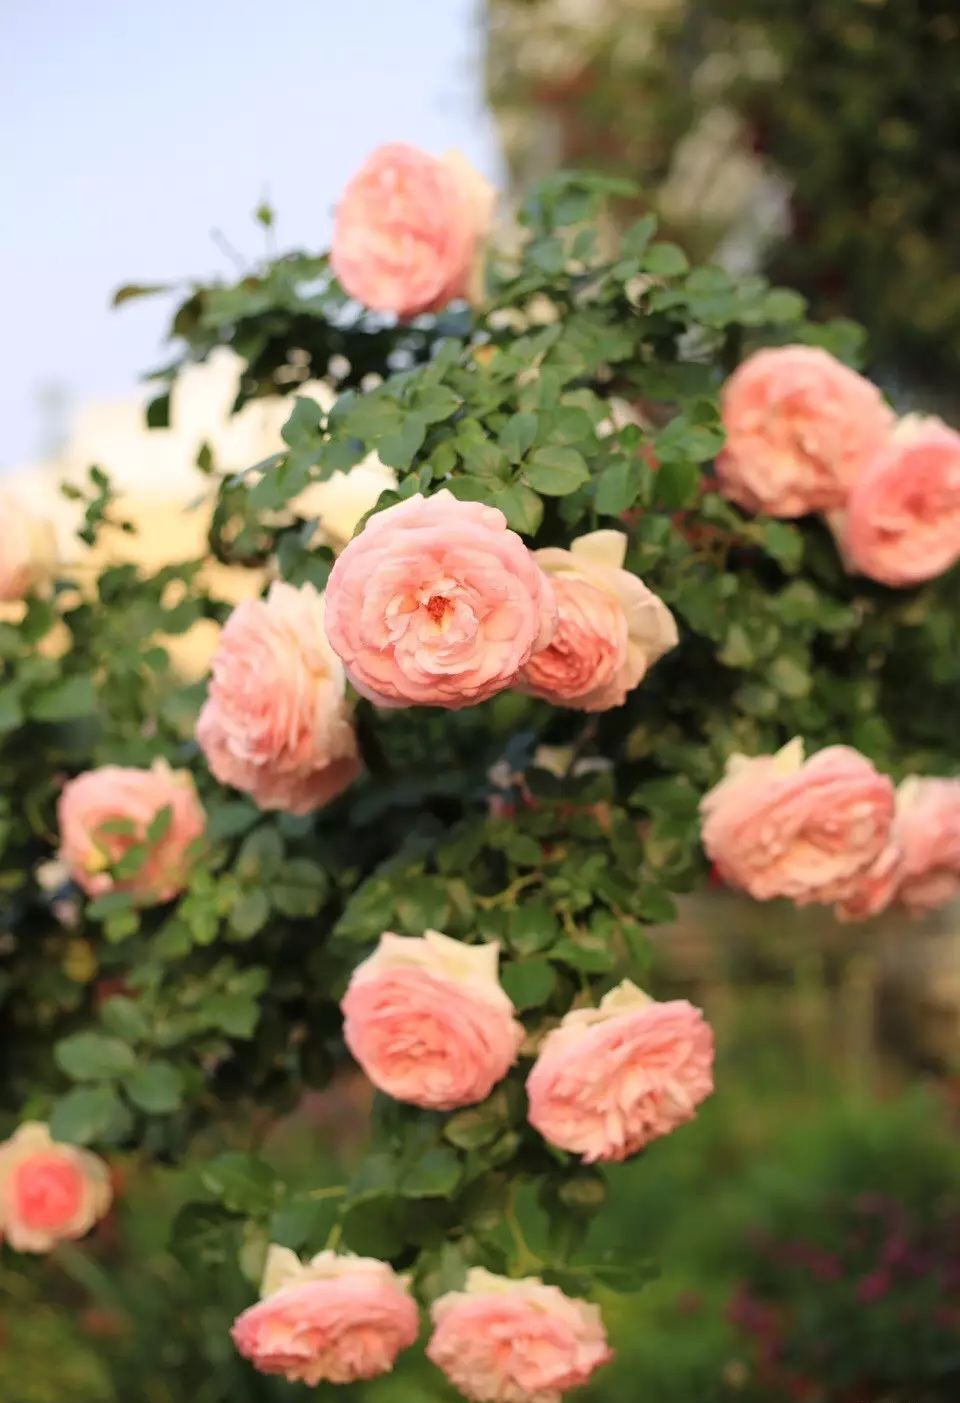 Ngôi nhà tràn ngập sắc hoa hồng ở thị trấn nhỏ của cô gái dành cả thanh xuân chỉ để trồng hoa làm đẹp nhà - Ảnh 16.